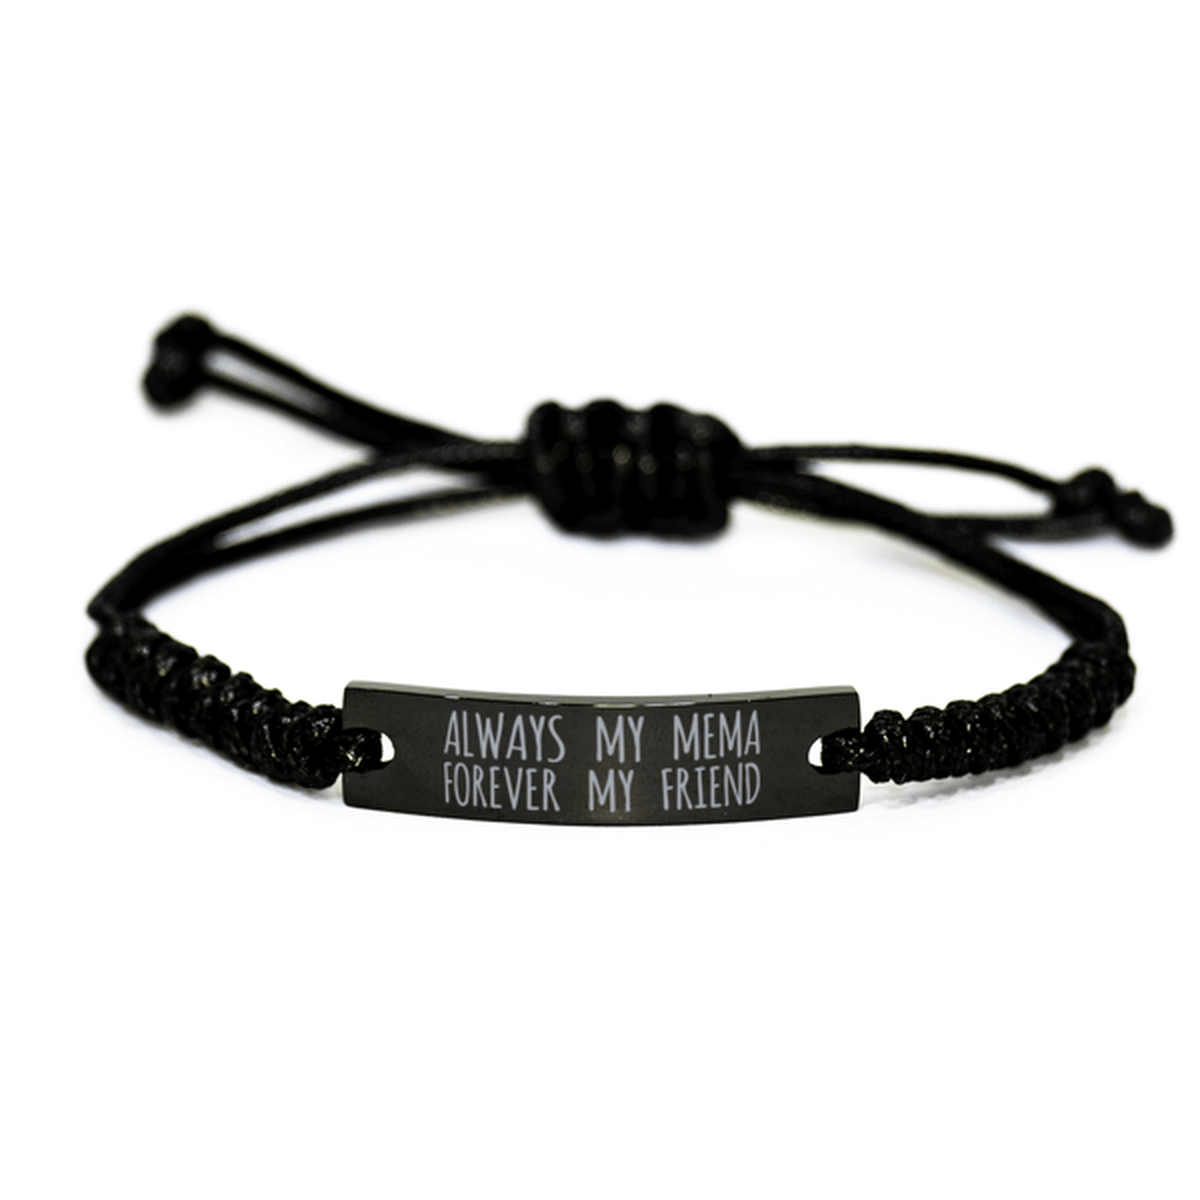 Inspirational Mema Black Rope Bracelet, Always My Mema Forever My Friend, Best Birthday Gifts For Family